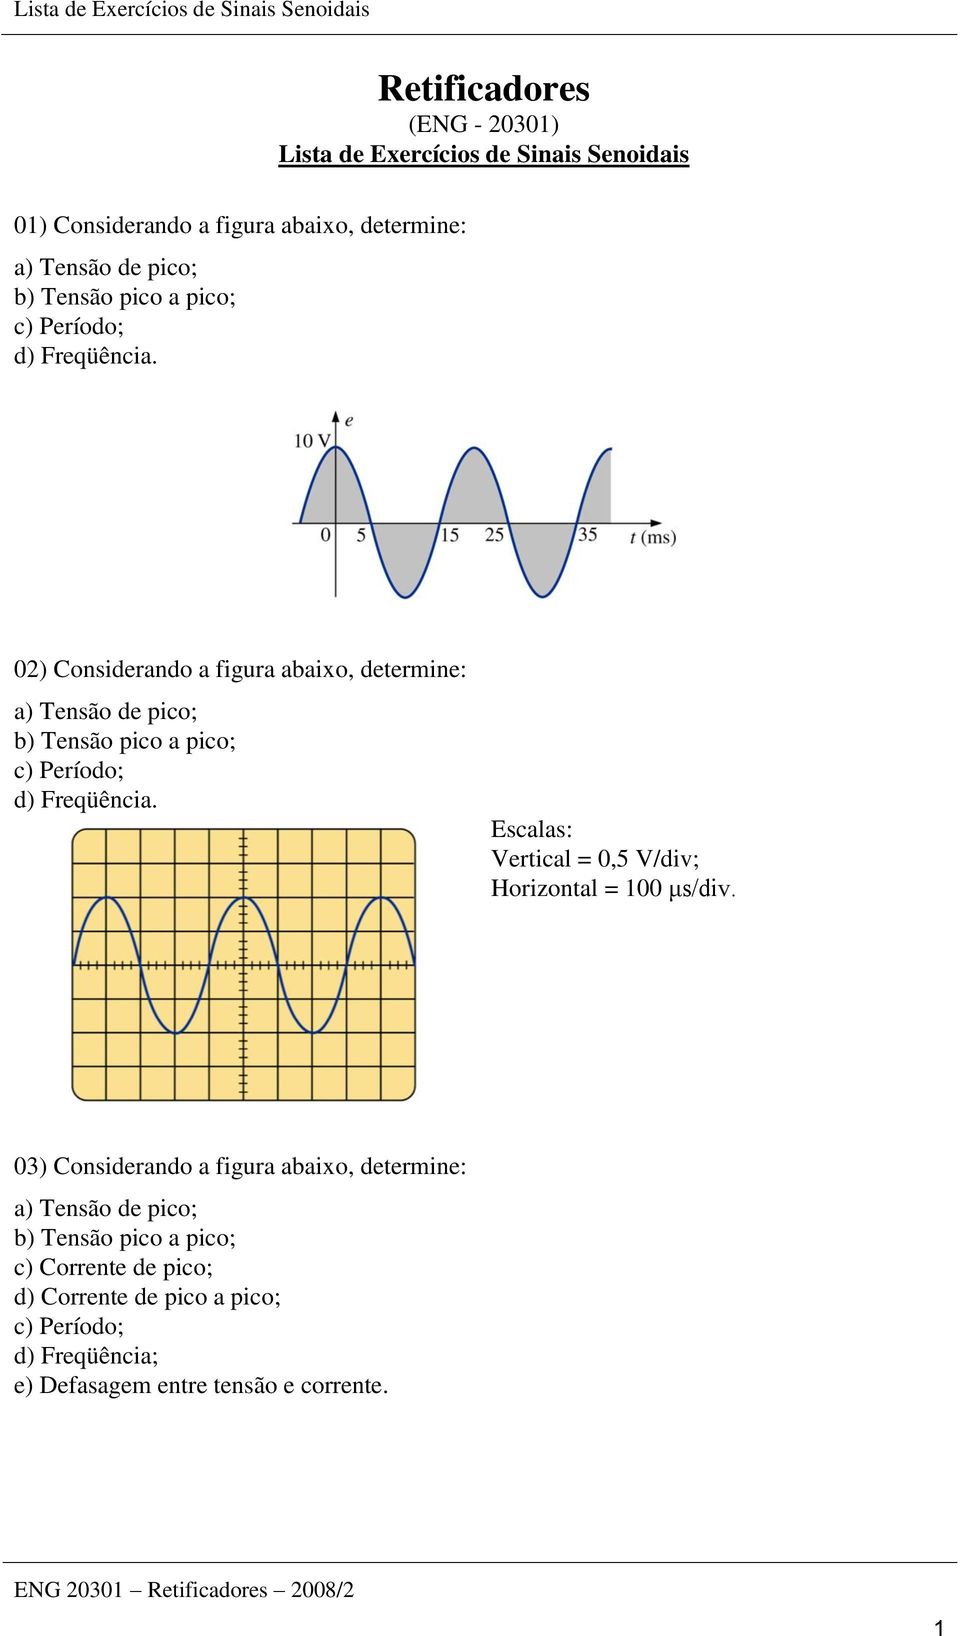 02) Considerando a figura abaixo, determine: a) Tensão de pico; b)  Escalas: Vertical = 0,5 V/div; Horizontal = 100 μs/div.